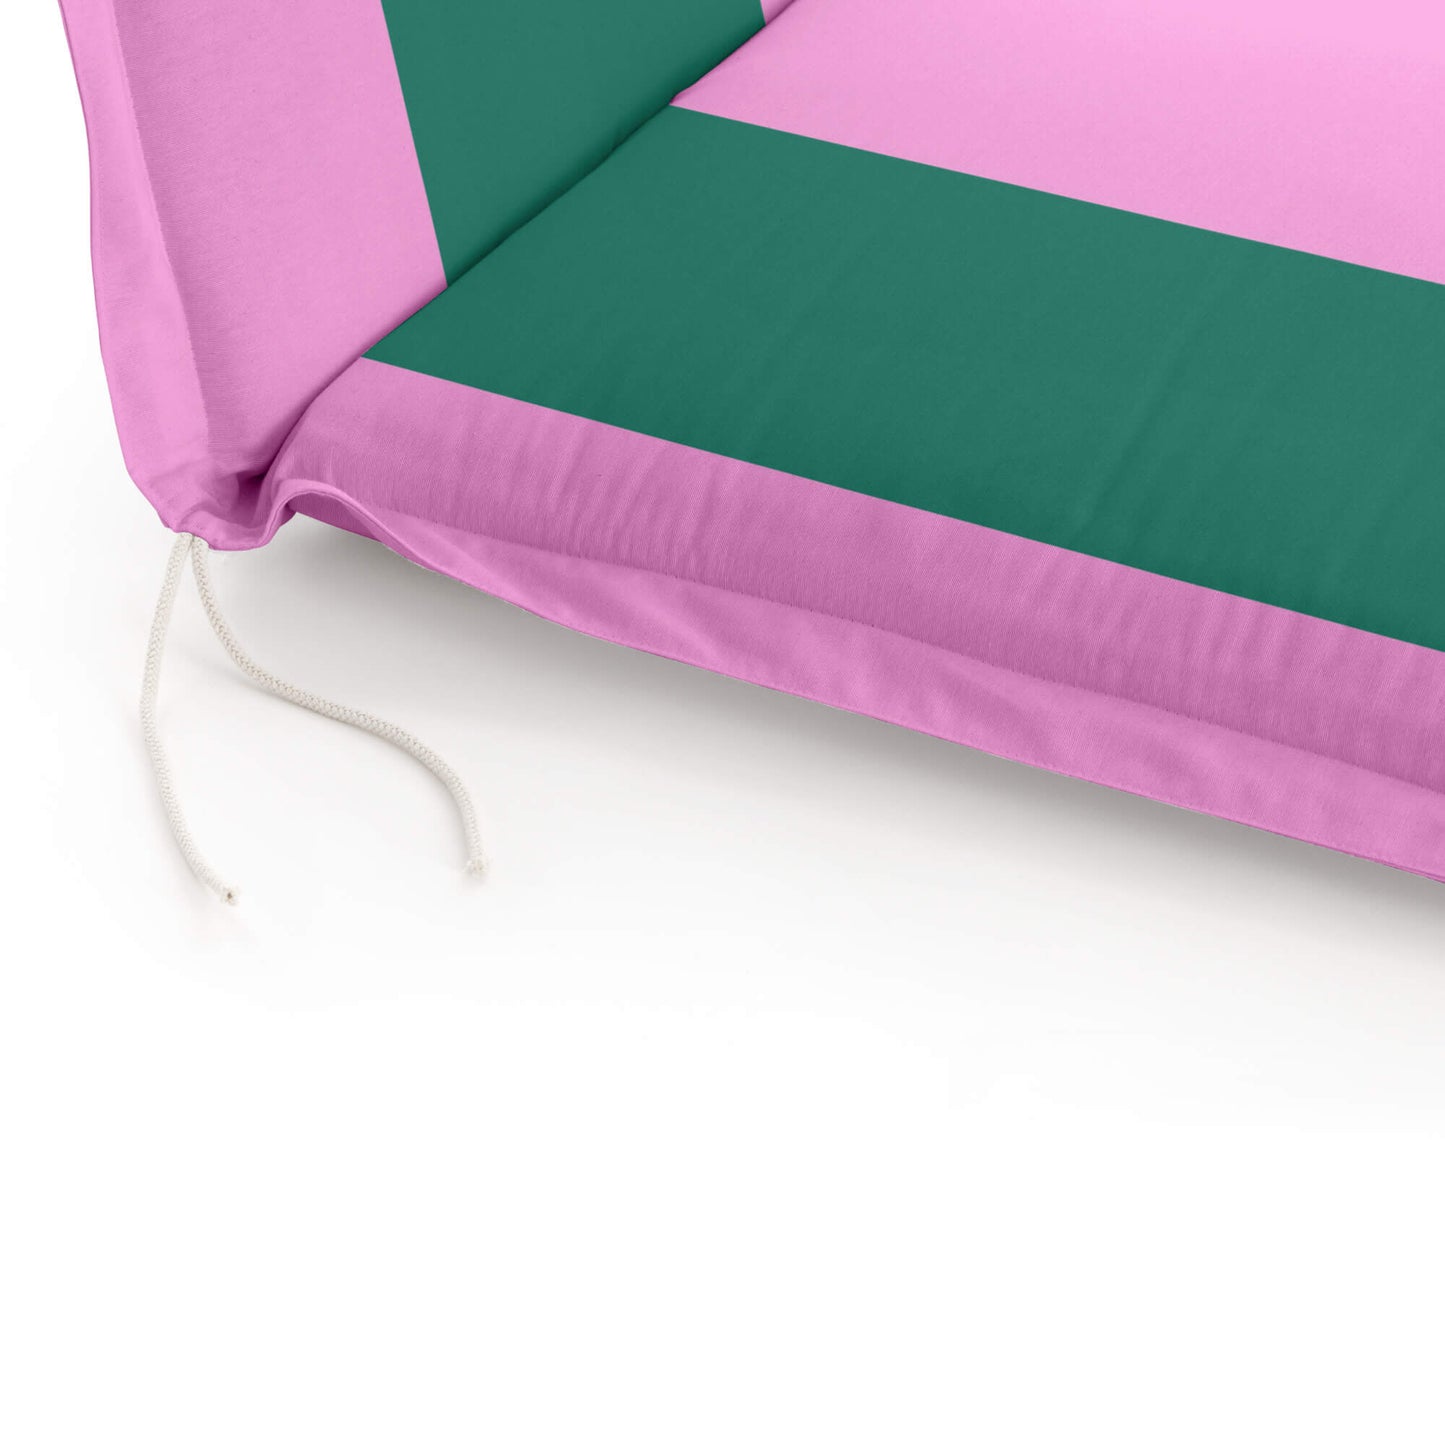 Lounger cushion 0120-410 53x175x5 cm